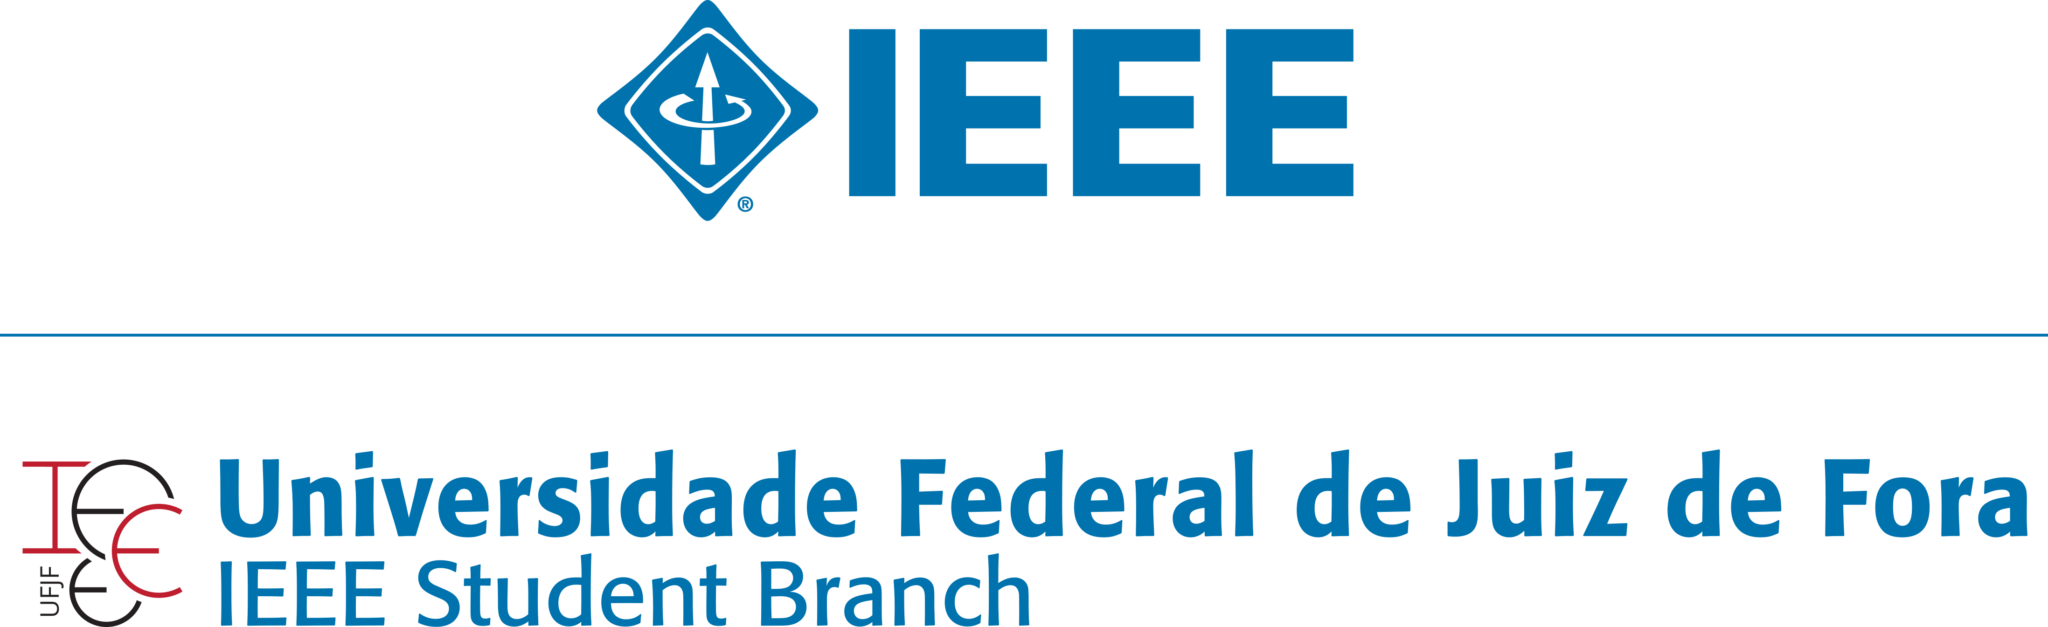 Ramo Estudantil IEEE UFJF